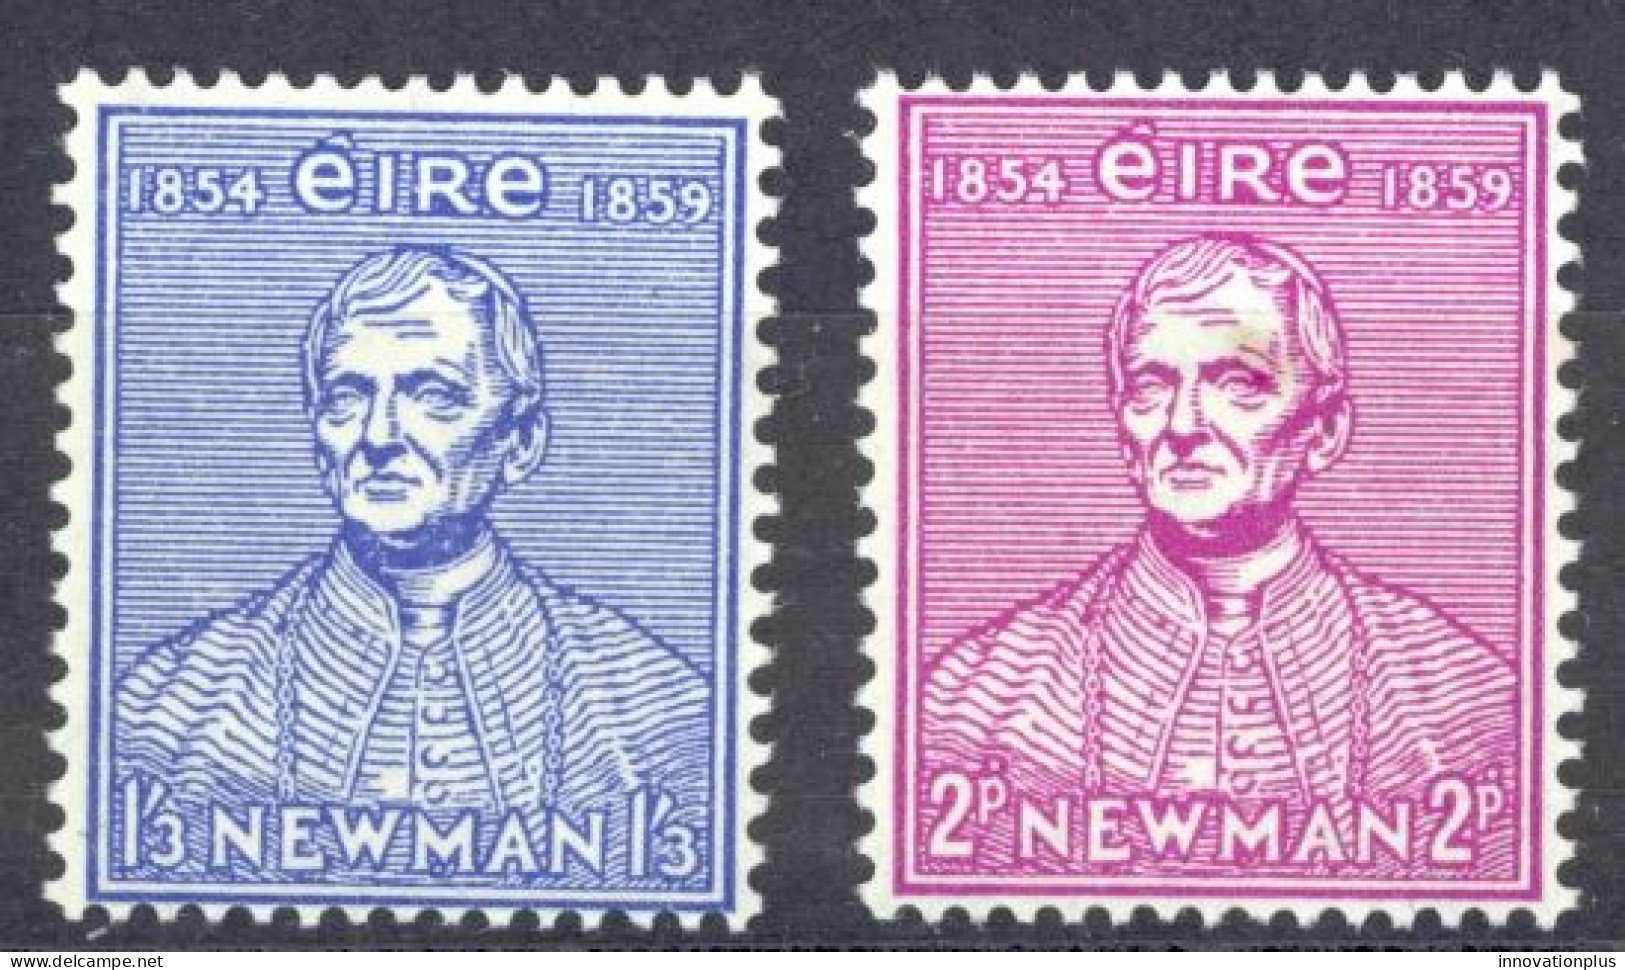 Ireland Sc# 153-154 MH 1954 John Henry Cardinal Newman - Neufs